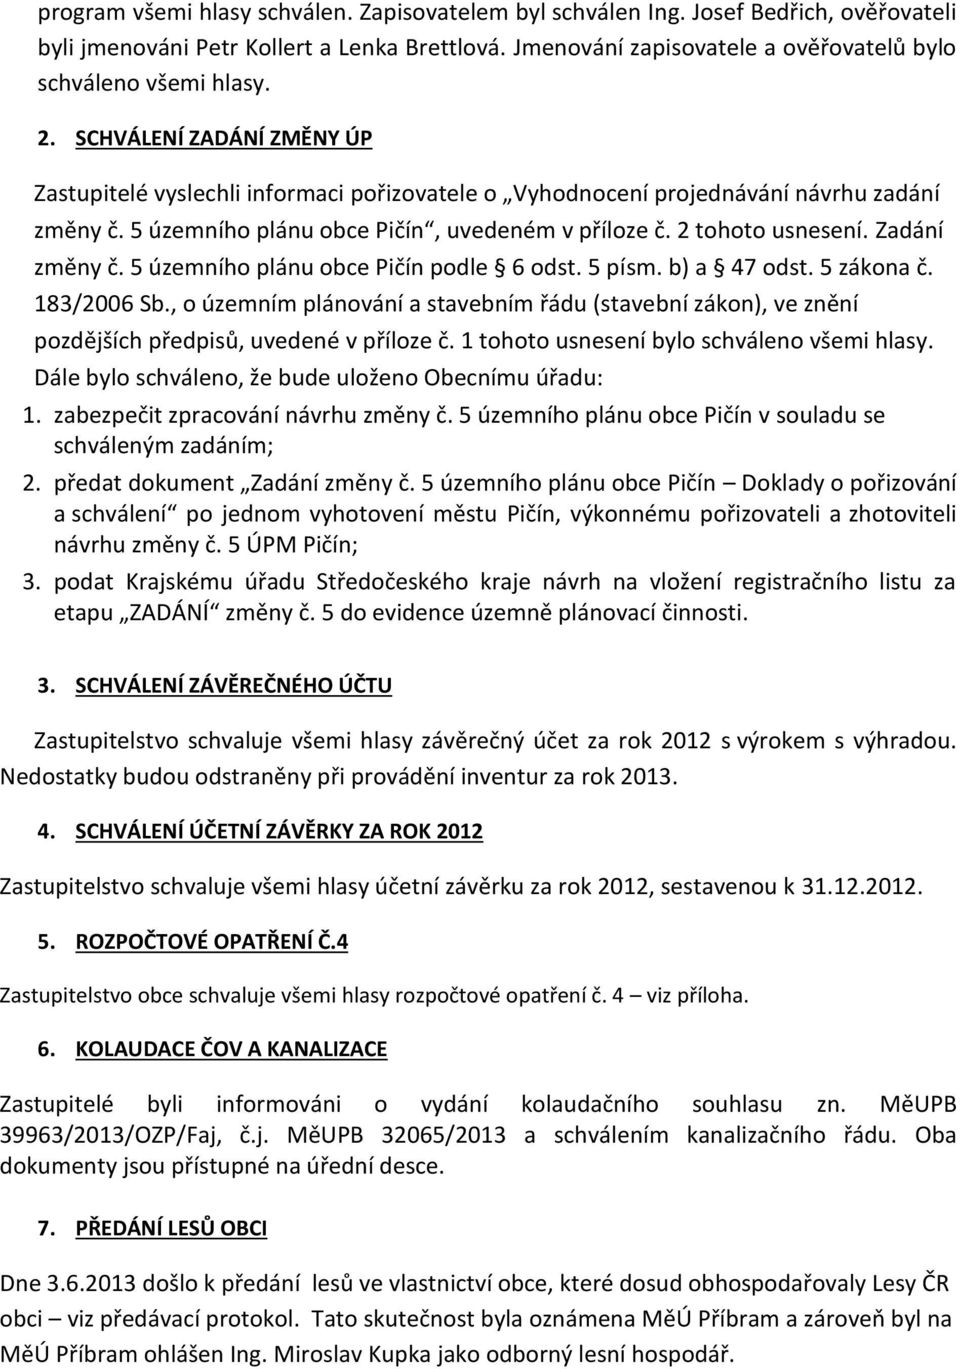 Zadání změny č. 5 územního plánu obce Pičín podle 6 odst. 5 písm. b) a 47 odst. 5 zákona č. 183/2006 Sb.